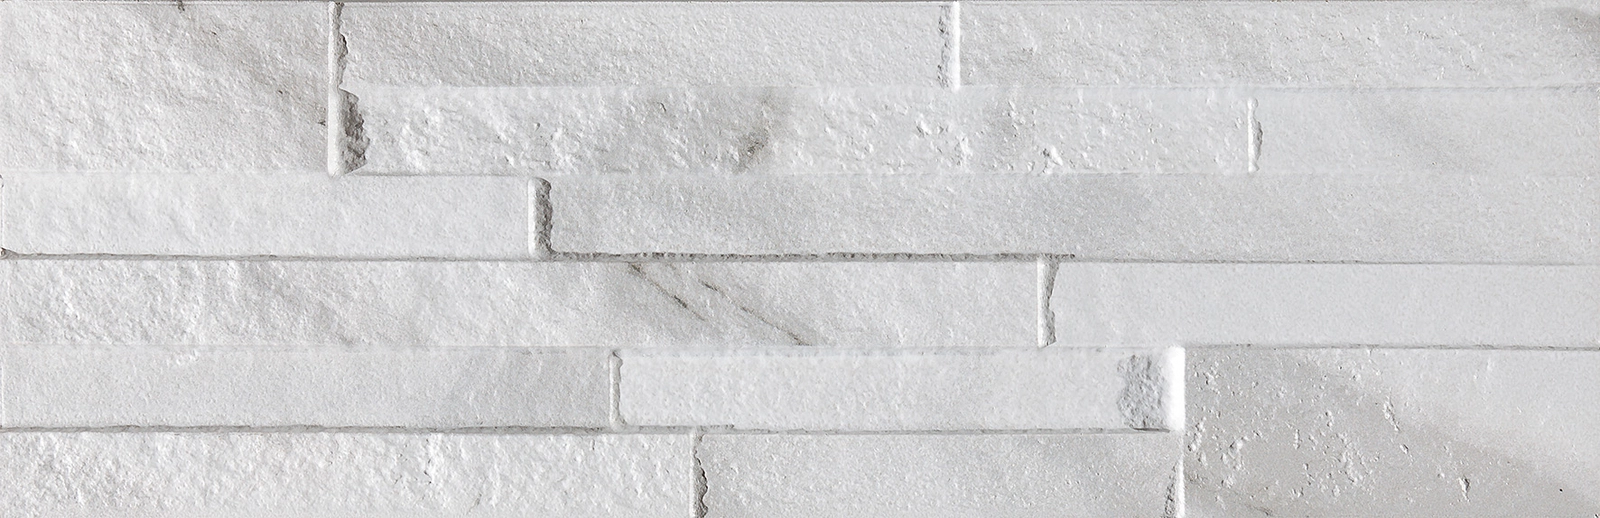 Obklad matný BLOK Carrara 16,3x51,7